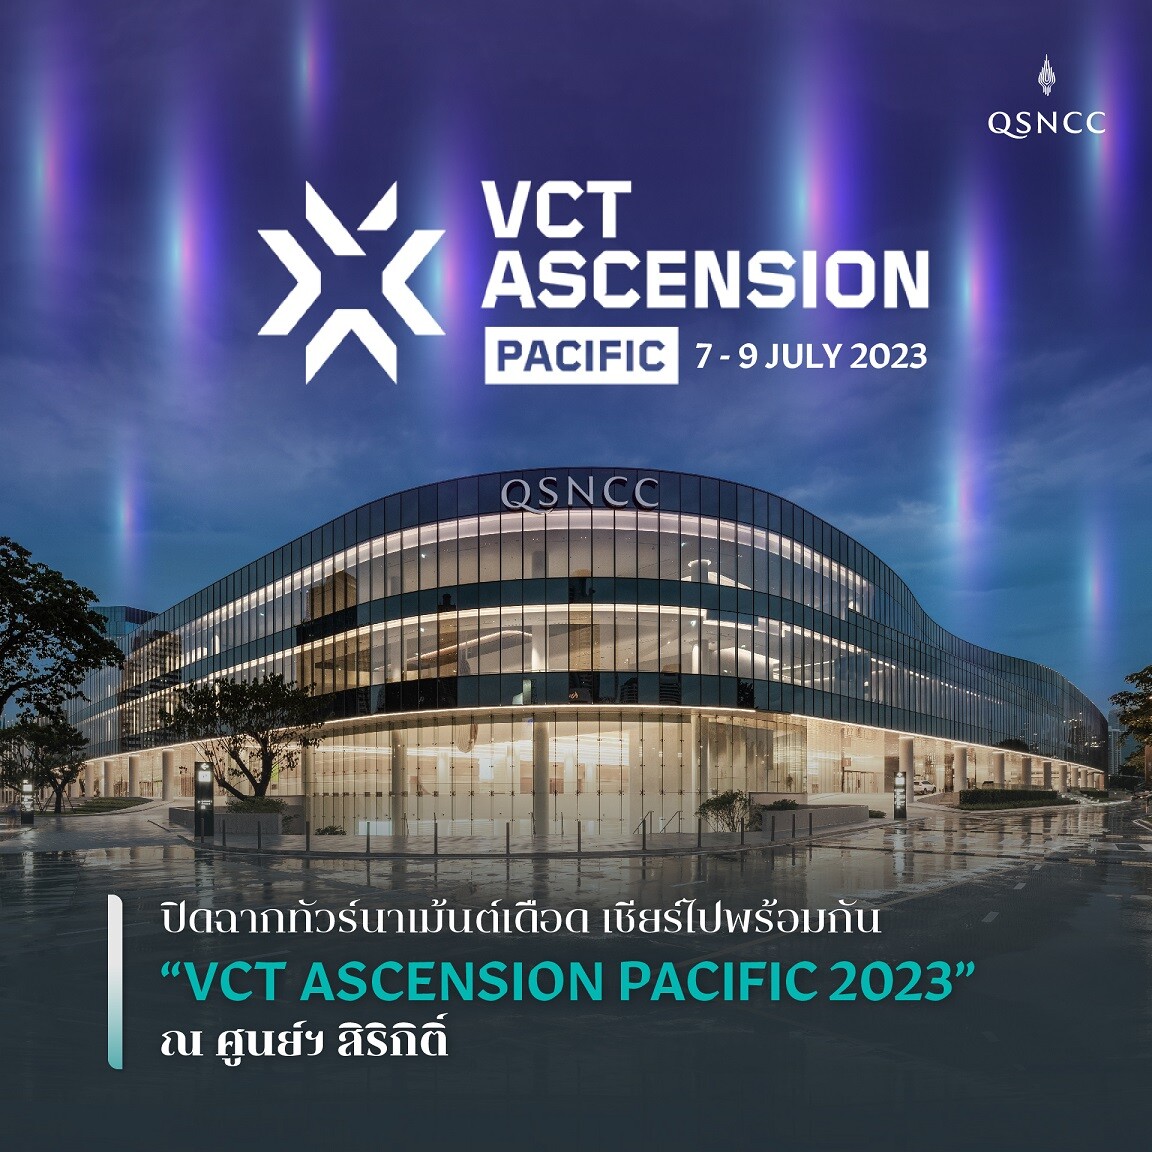 ปิดฉากทัวร์นาเม้นต์เดือด เชียร์ไปพร้อมกัน "VCT ASCENSION PACIFIC 2023" ณ ศูนย์ฯ สิริกิติ์